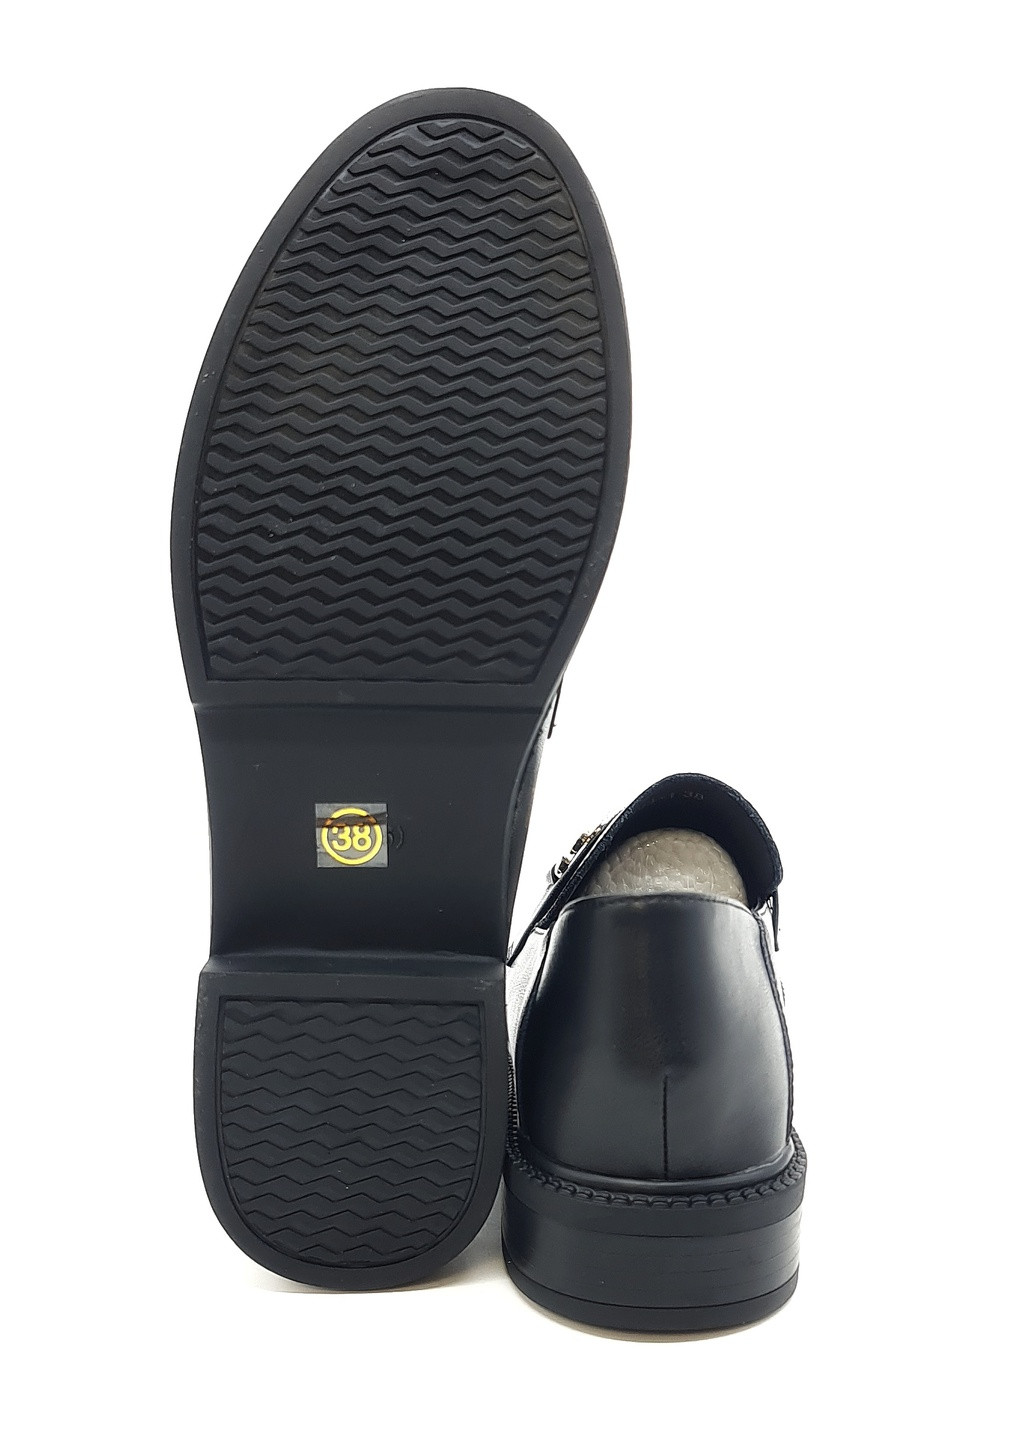 Женские туфли черные кожаные YA-18-1 23 см(р) Yalasou